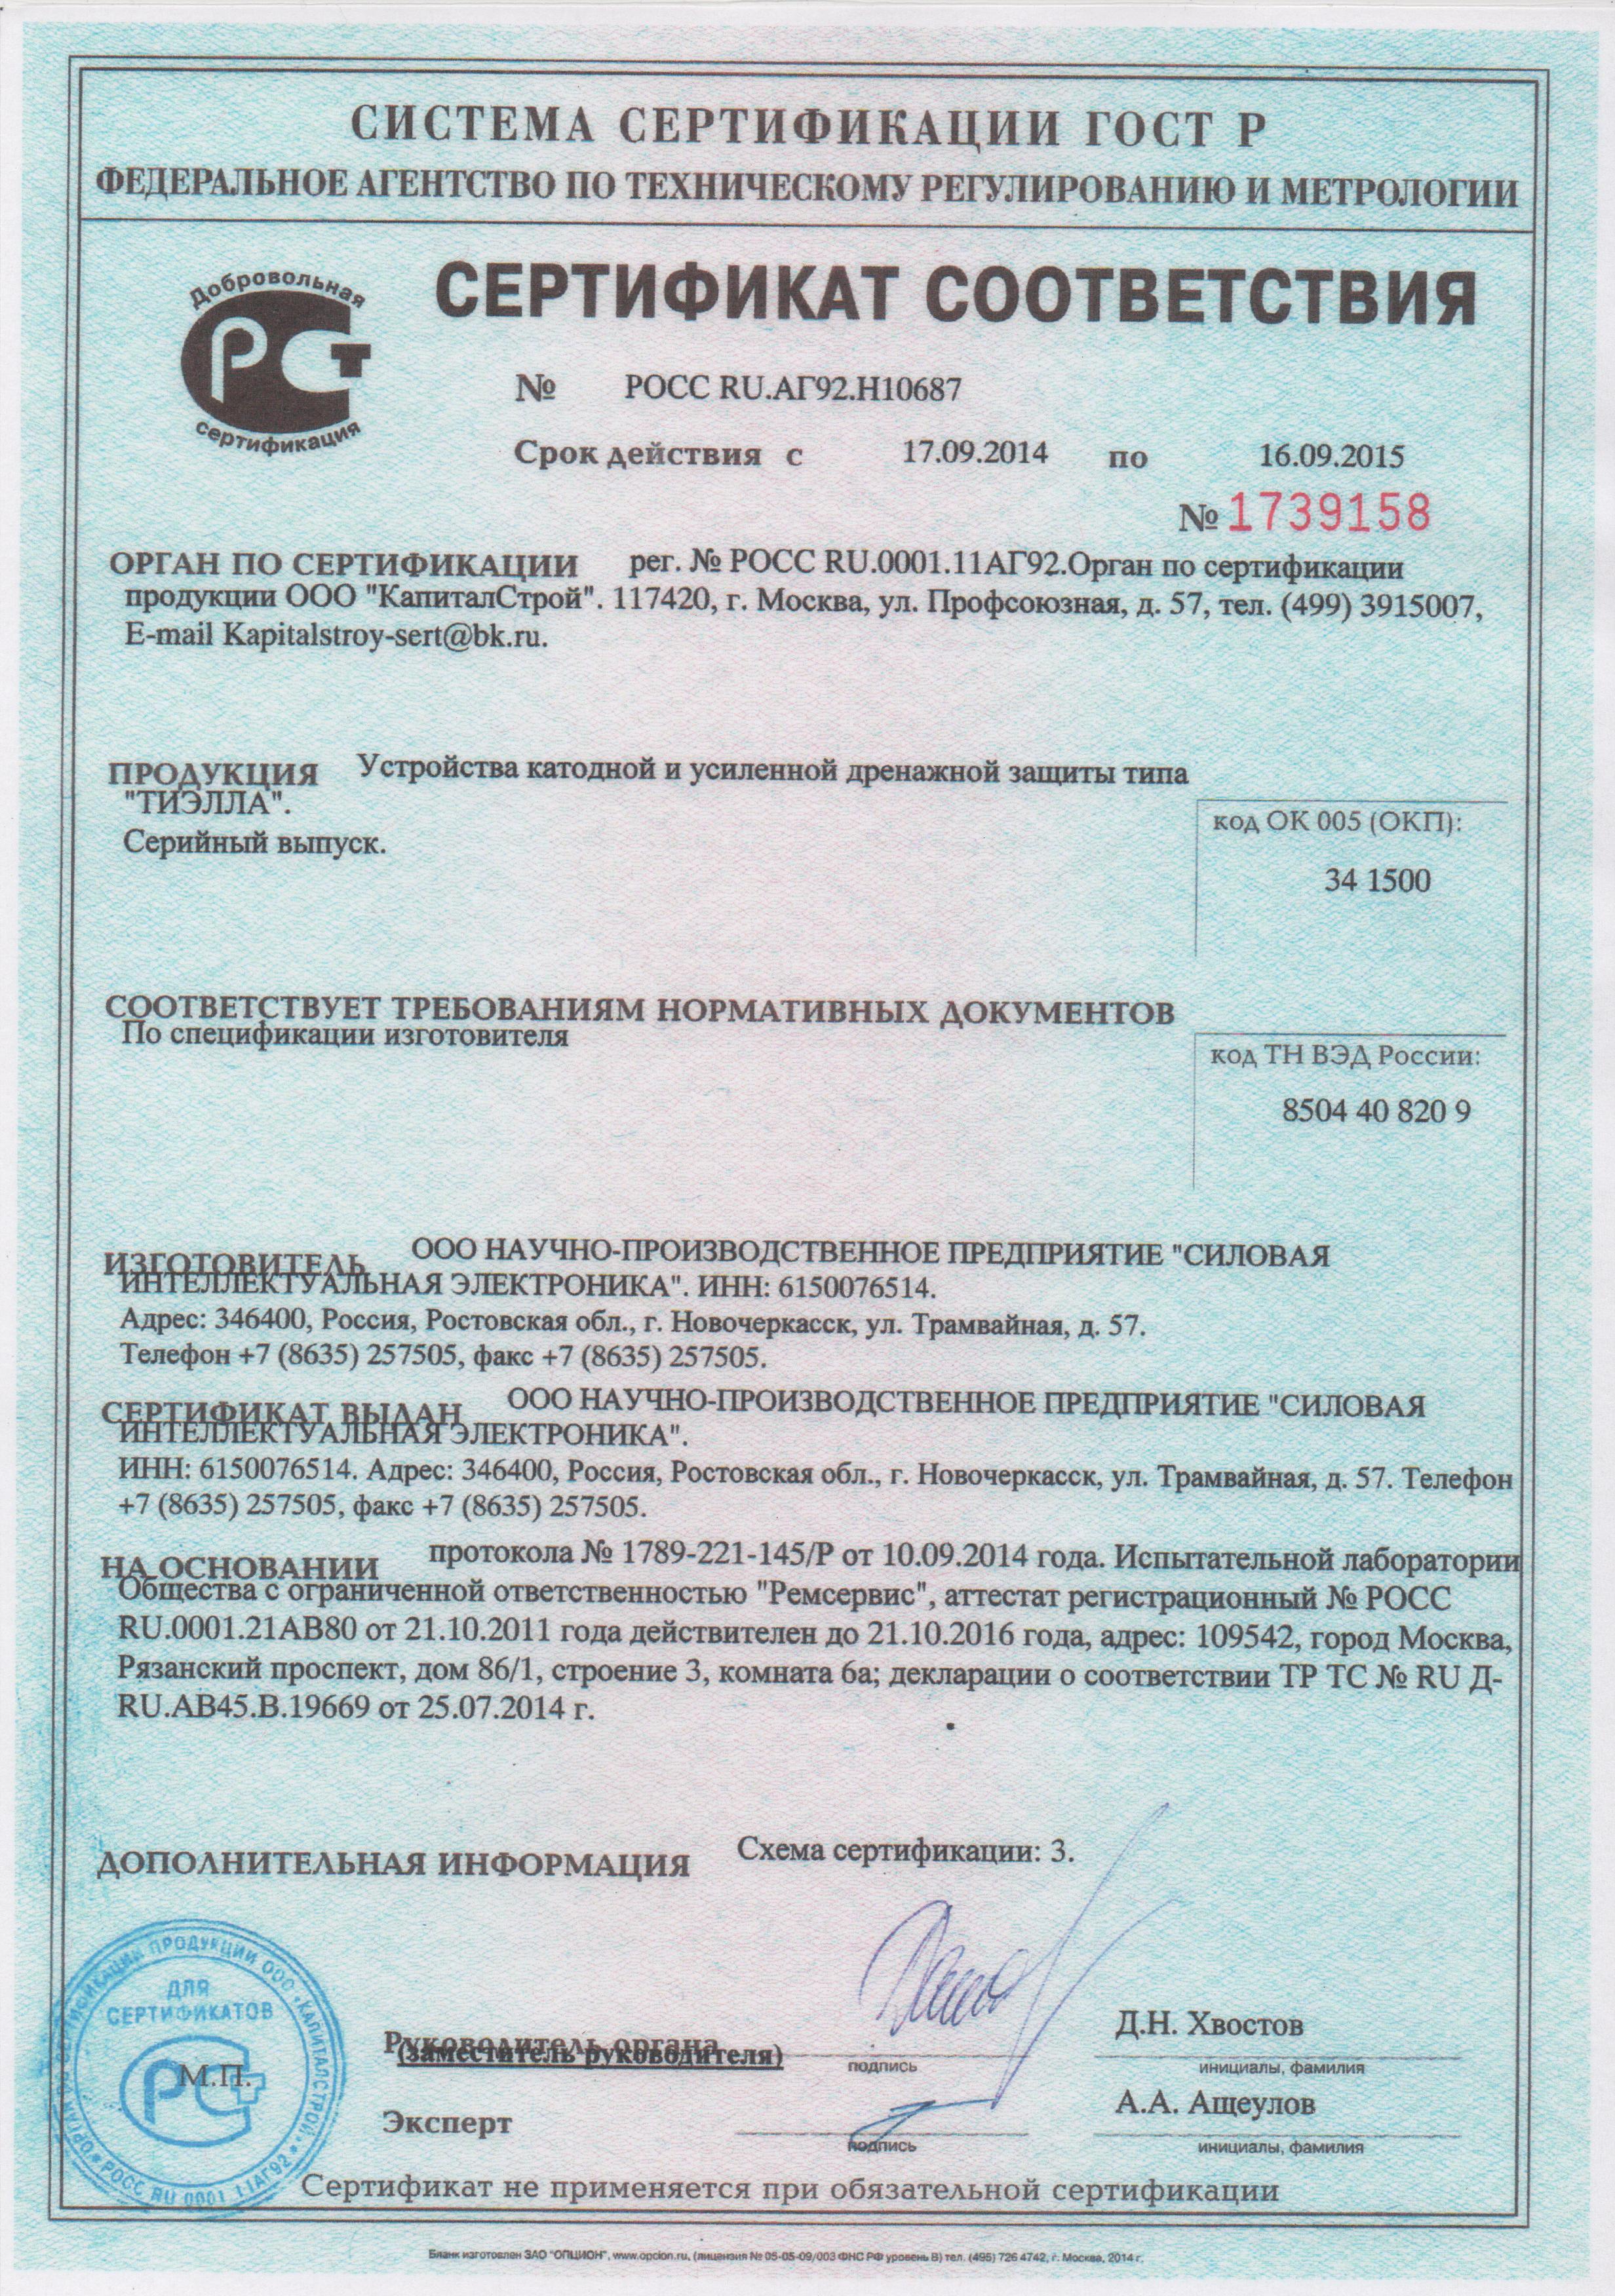 Сертификат соответствия ГОСТ Р  на станции катодной и усиленной дренажной защиты типа "ТИЭЛЛА" НПП "СИЭЛ"